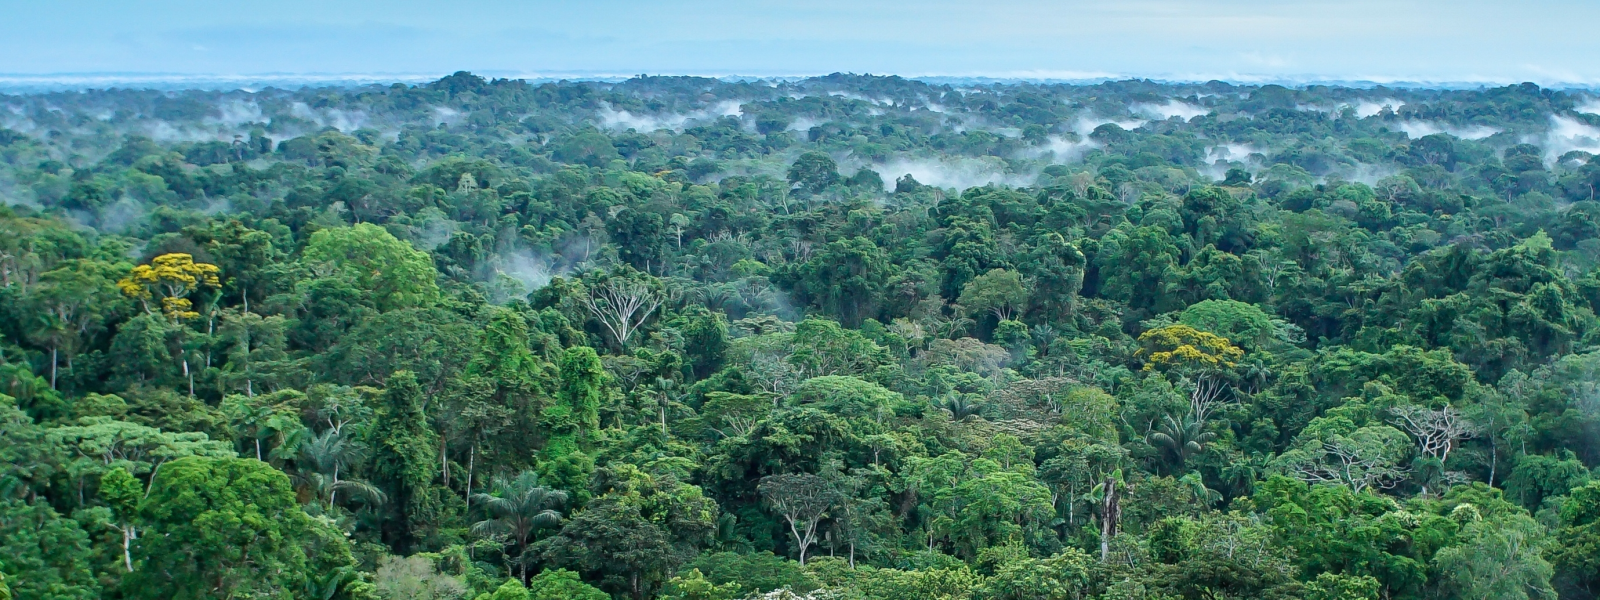 Paisaje de la selva amazónica en el Parque Nacional Yasuní, Ecuador